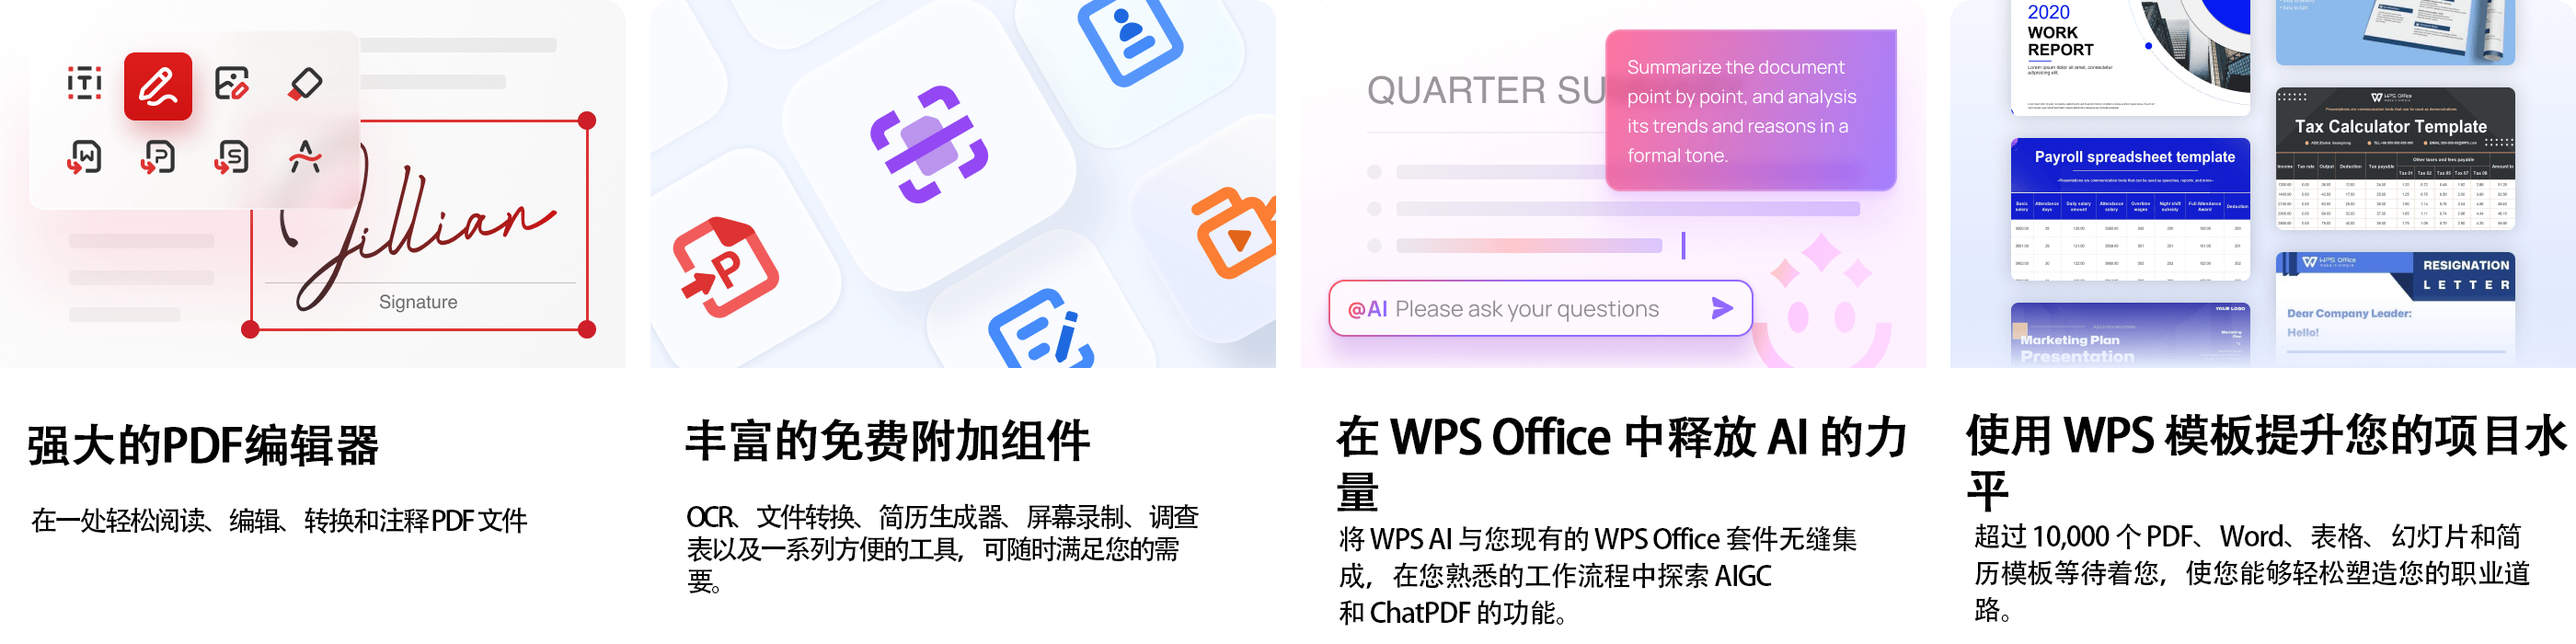 WPS官网,WPS下载,WPS中文版,WPS电脑版